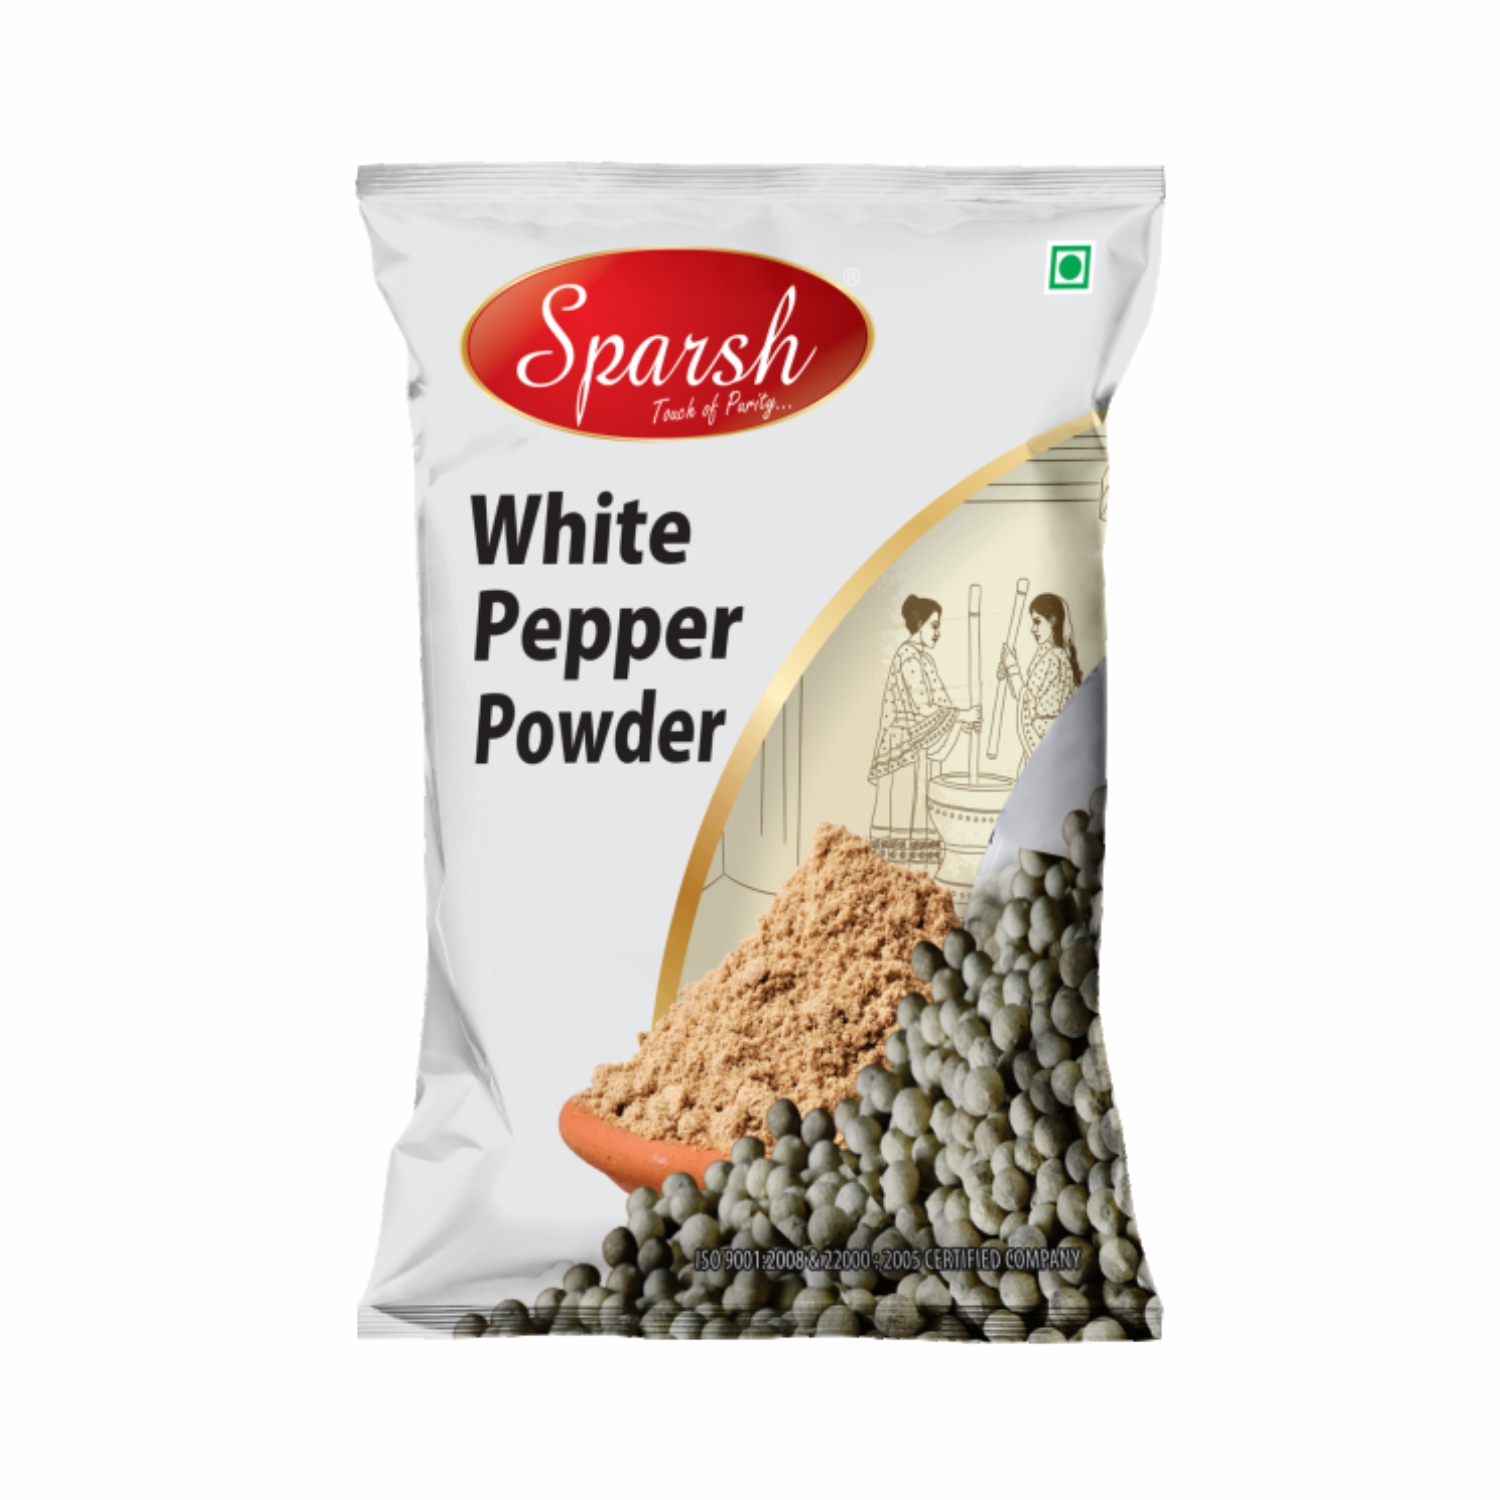 Sparsh White Pepper Powder